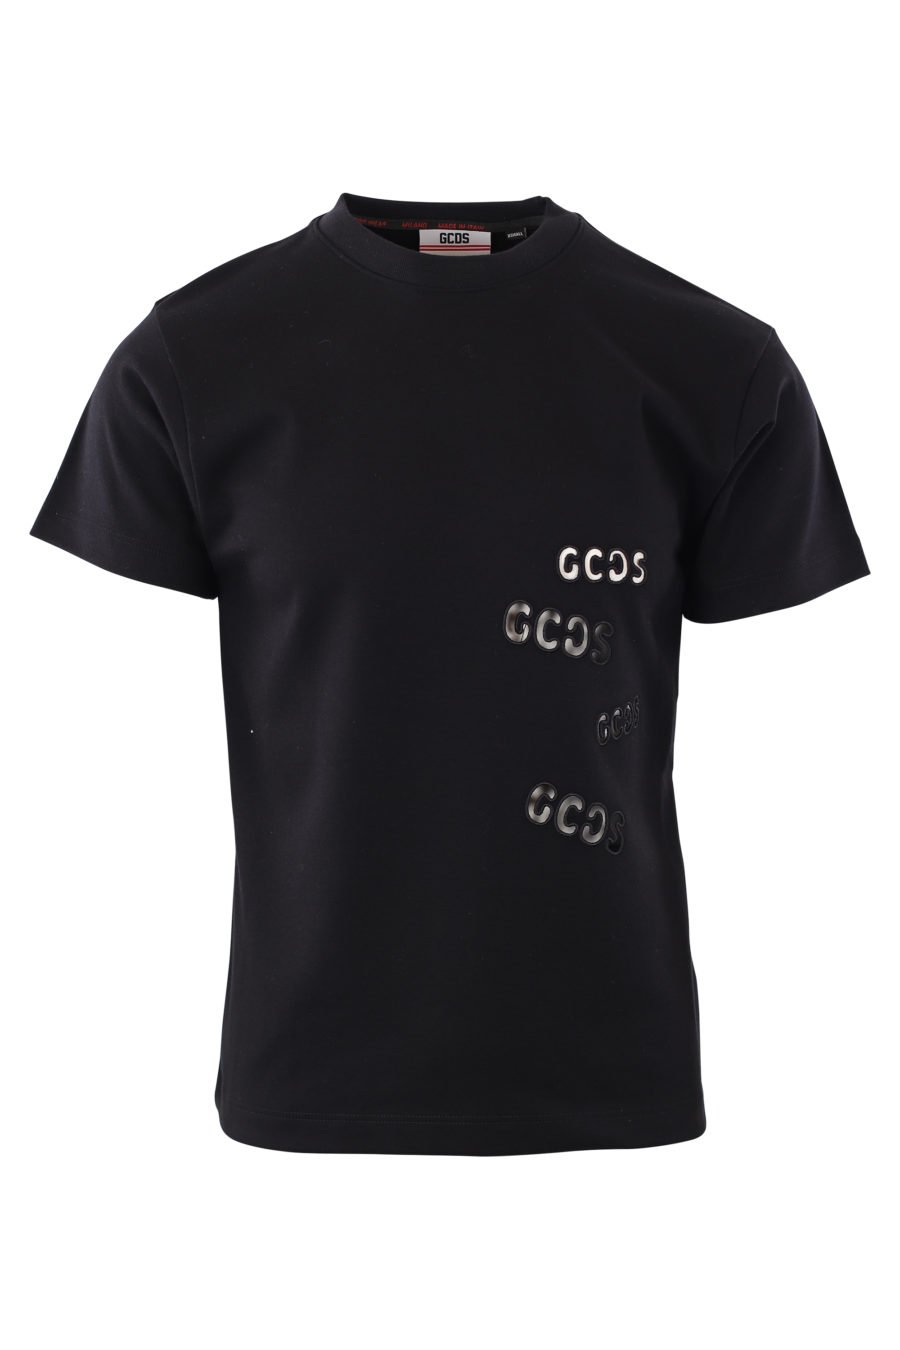 T-shirt preta com logótipo vazado - IMG 2045